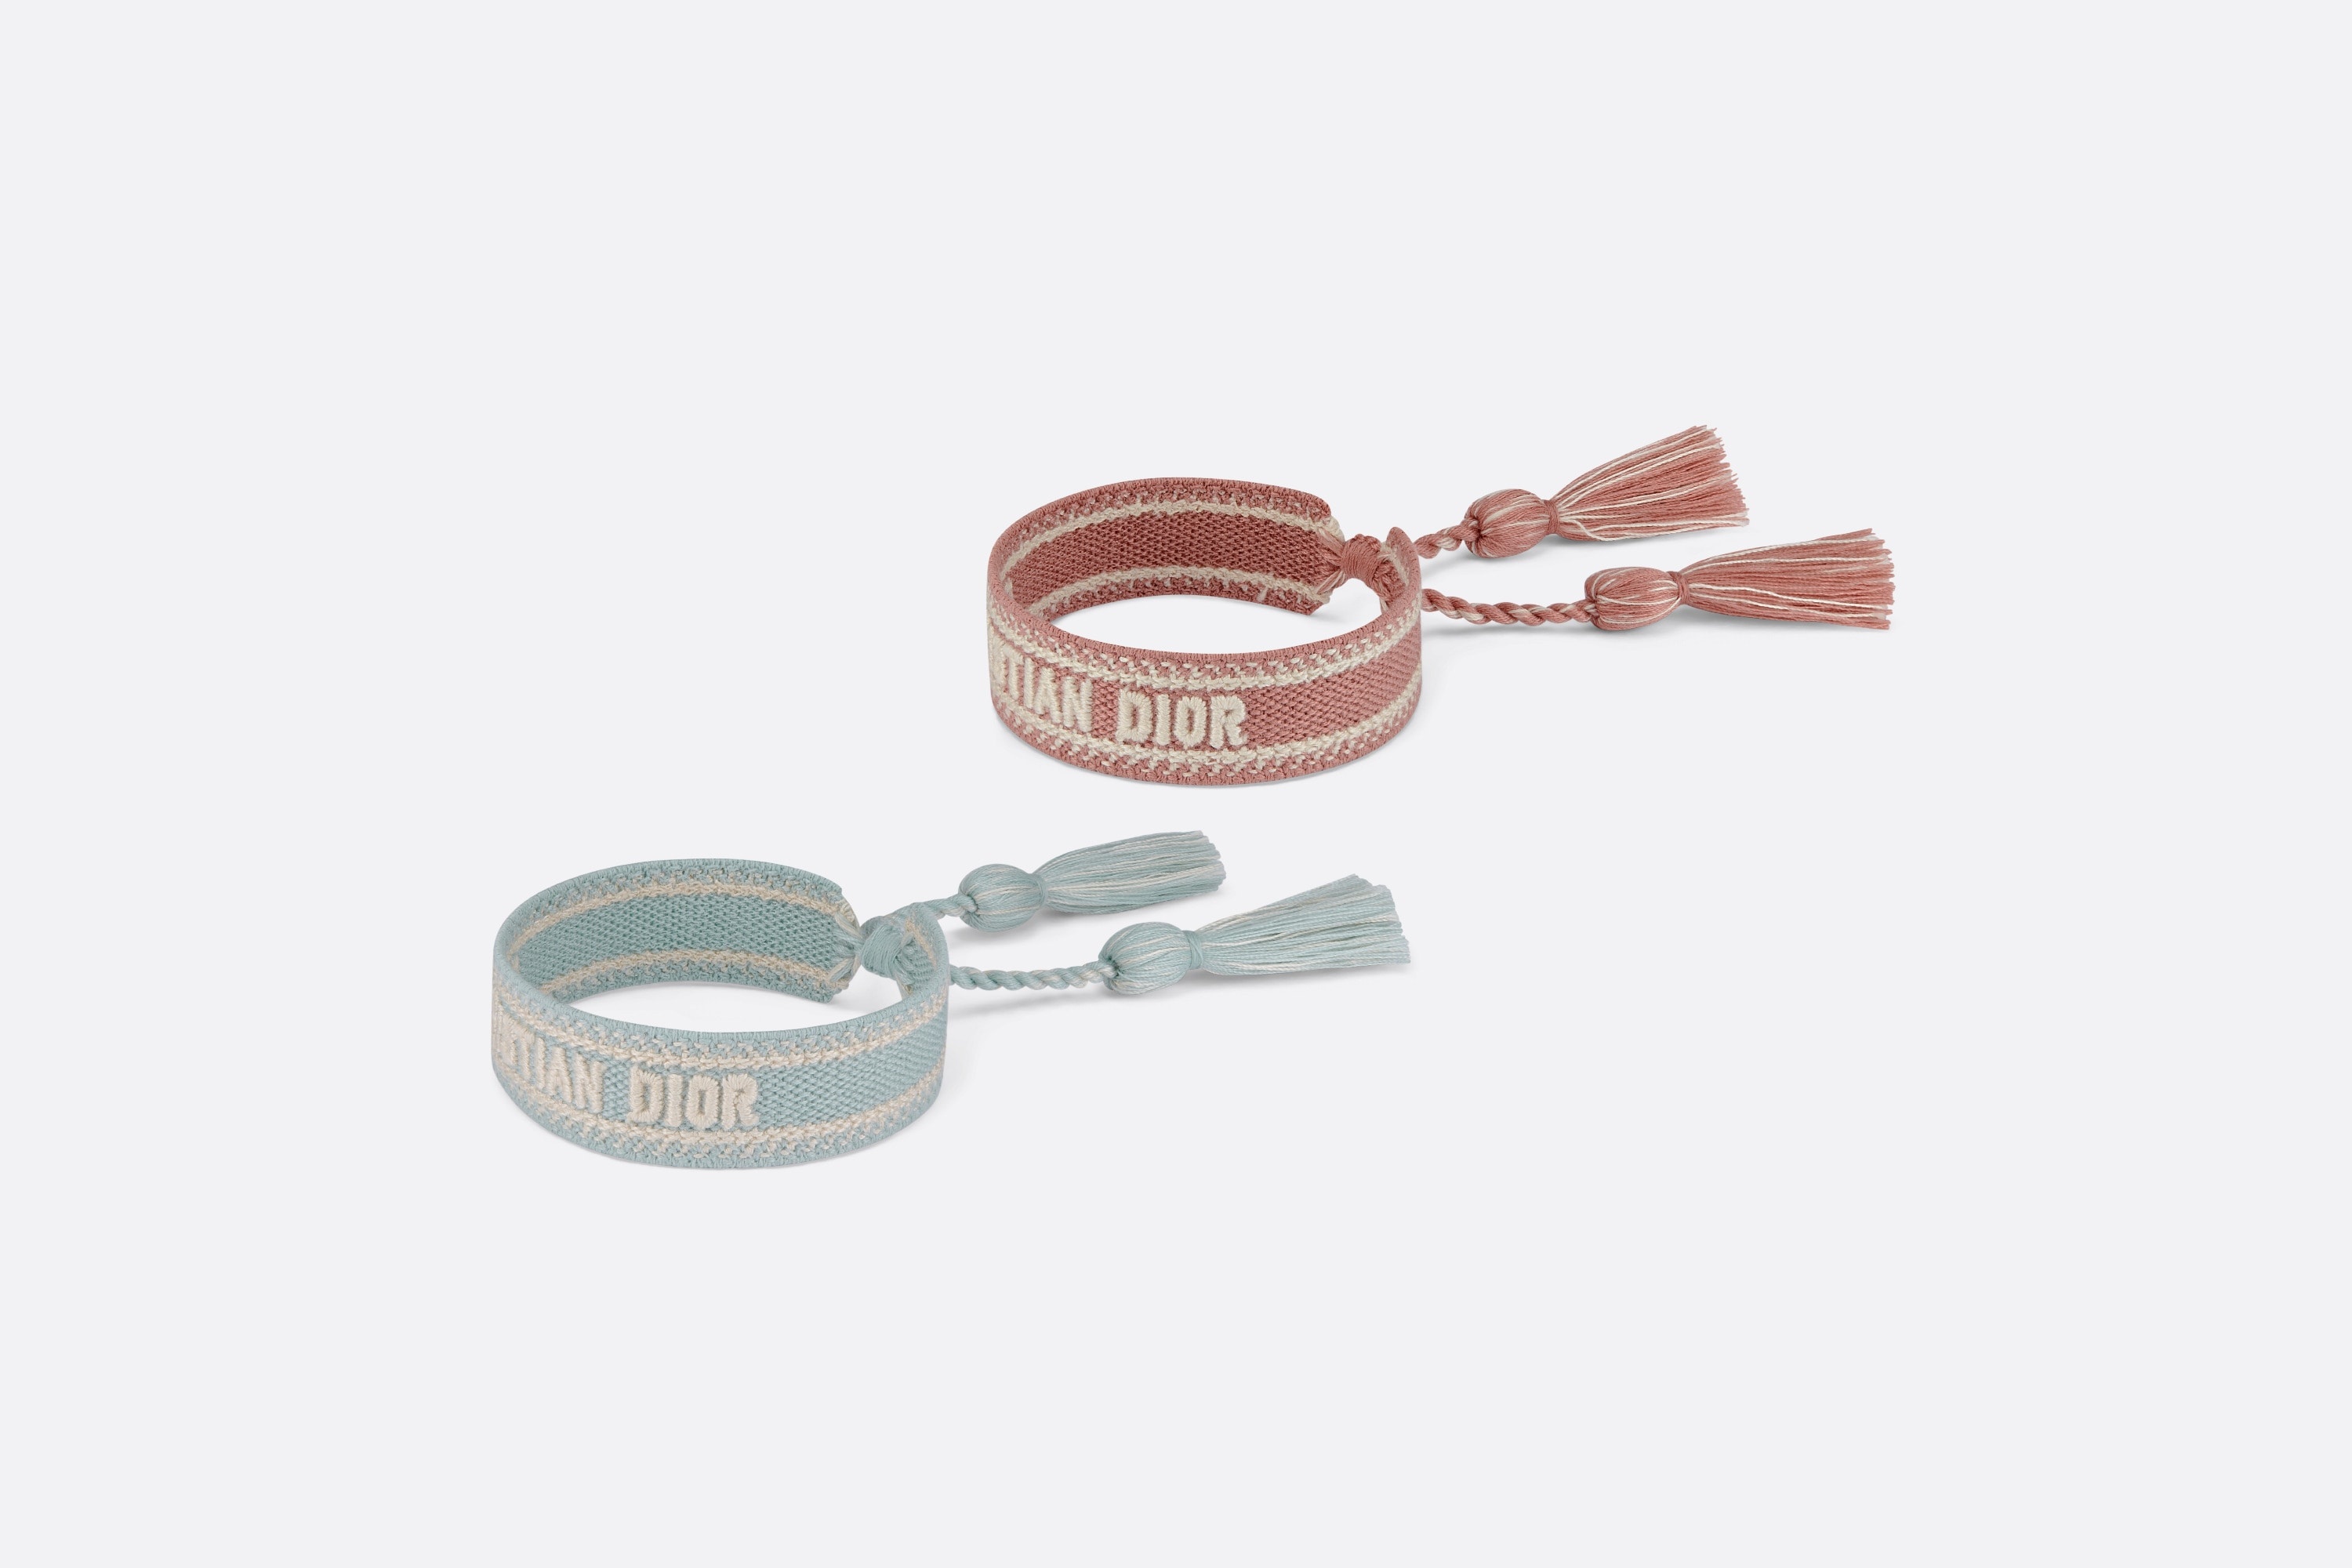 Christian Dior Bracelet Set - 4